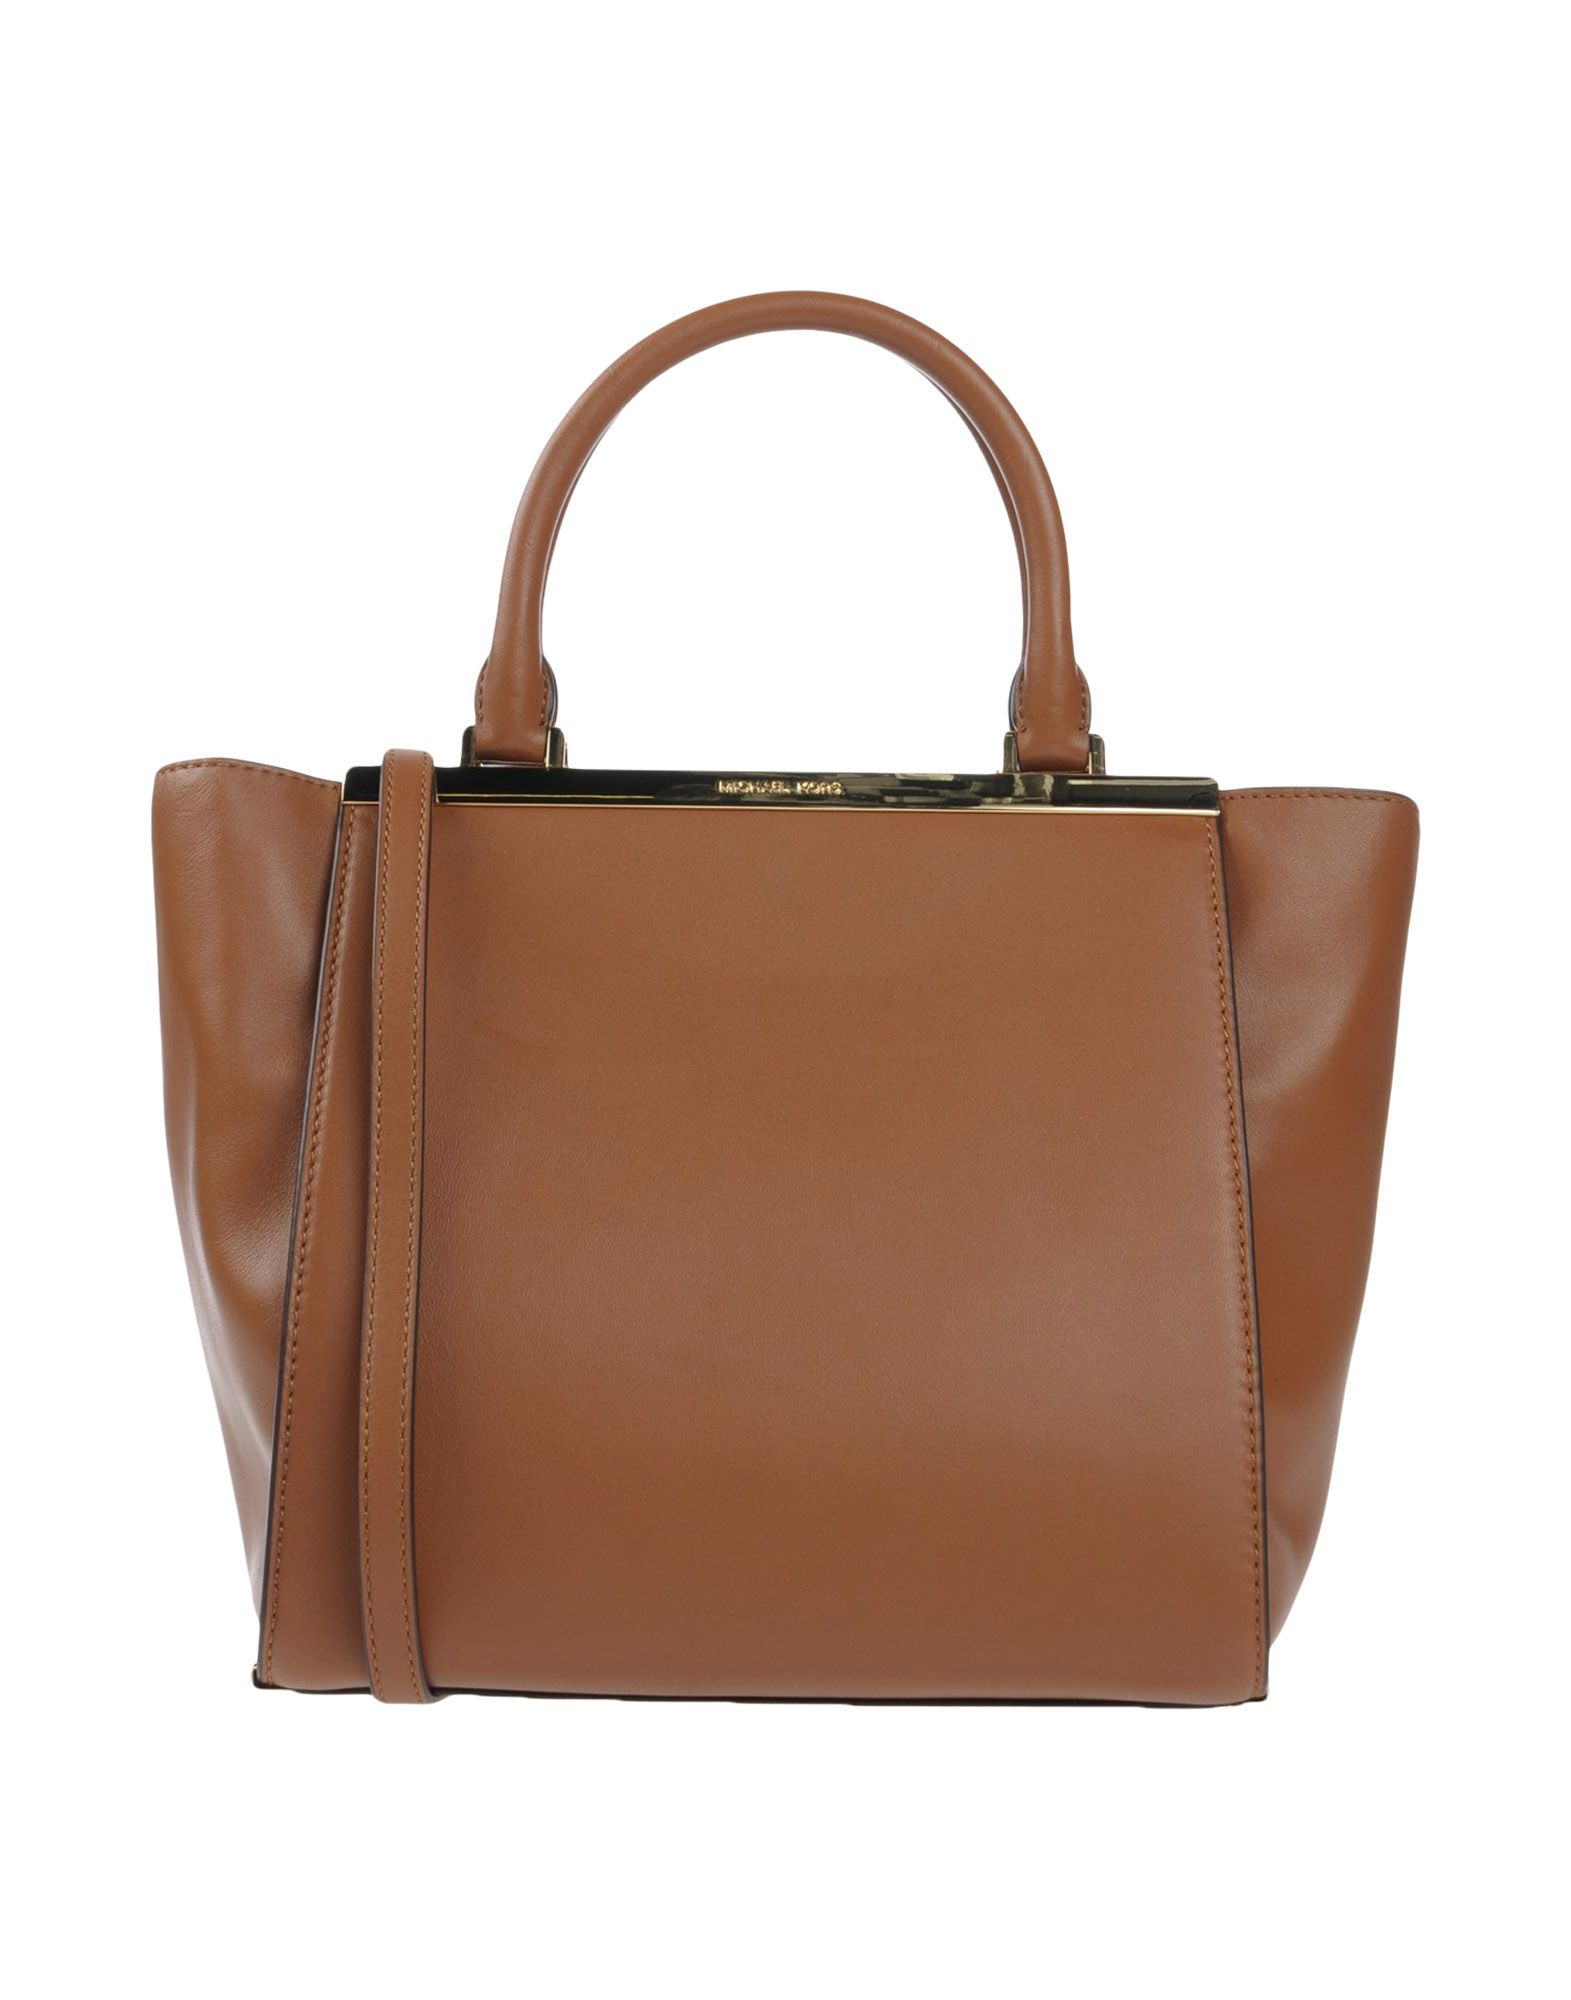 Lyst - Michael Michael Kors Handbag in Brown